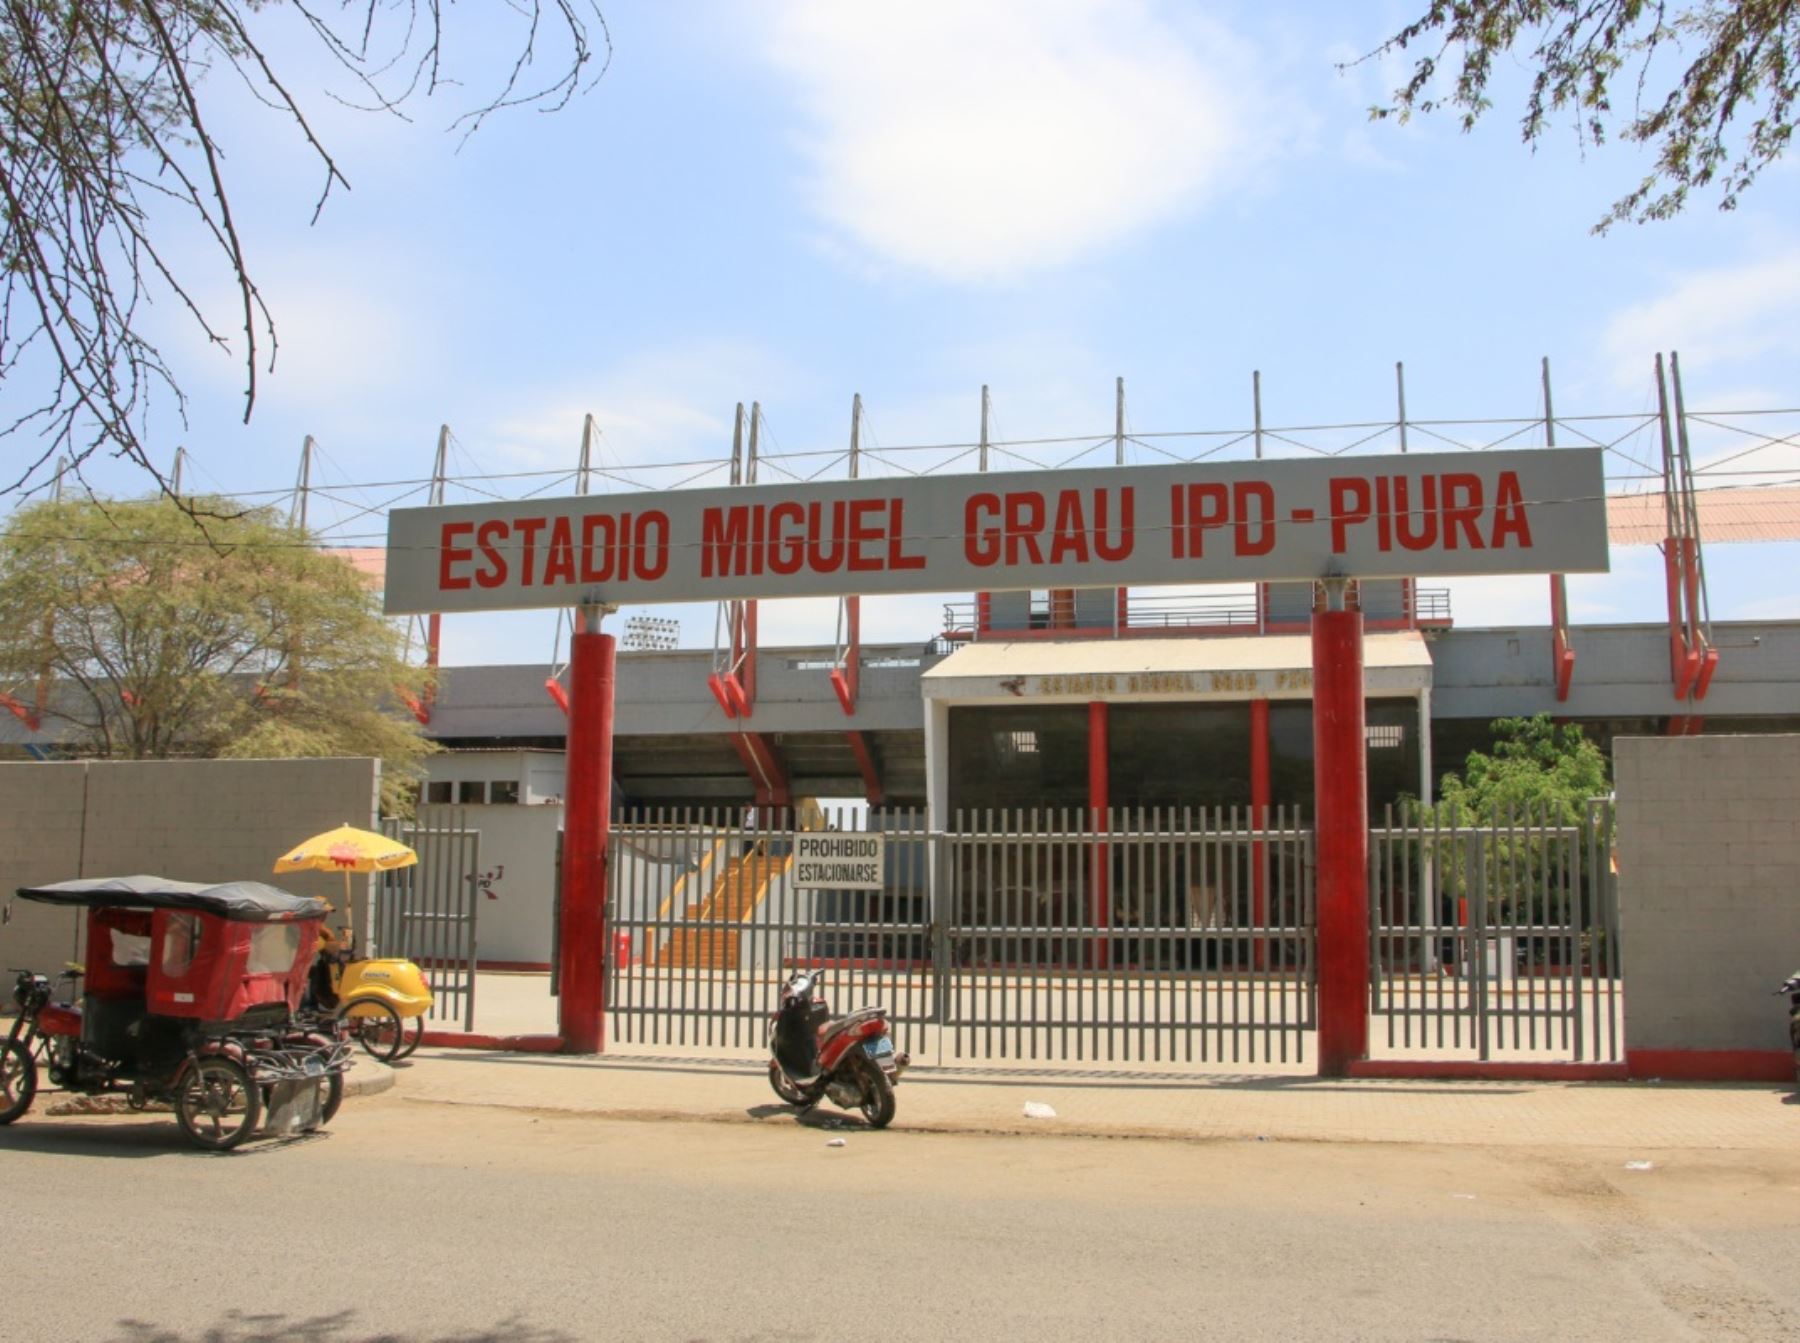 Como en el 2005, el estadio Miguel Grau de Piura volverá a ser una de las sedes del Mundial Sub-17, que Perú organizará este año. Foto: cortesía Wallac Noticias.